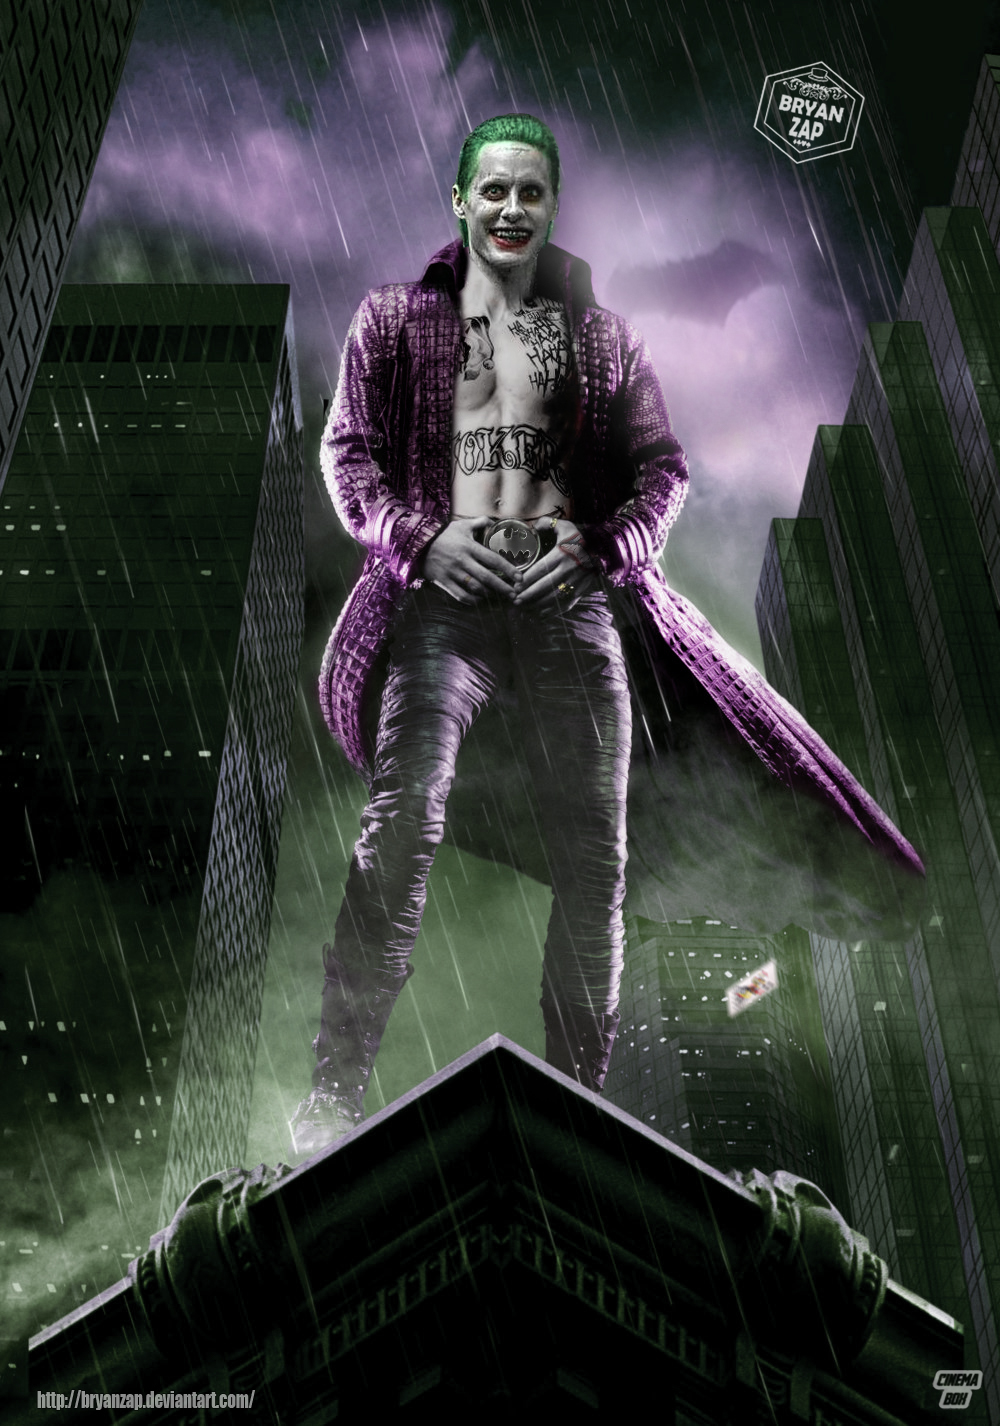 The Batman Movie - Joker Poster by Bryanzap on DeviantArt